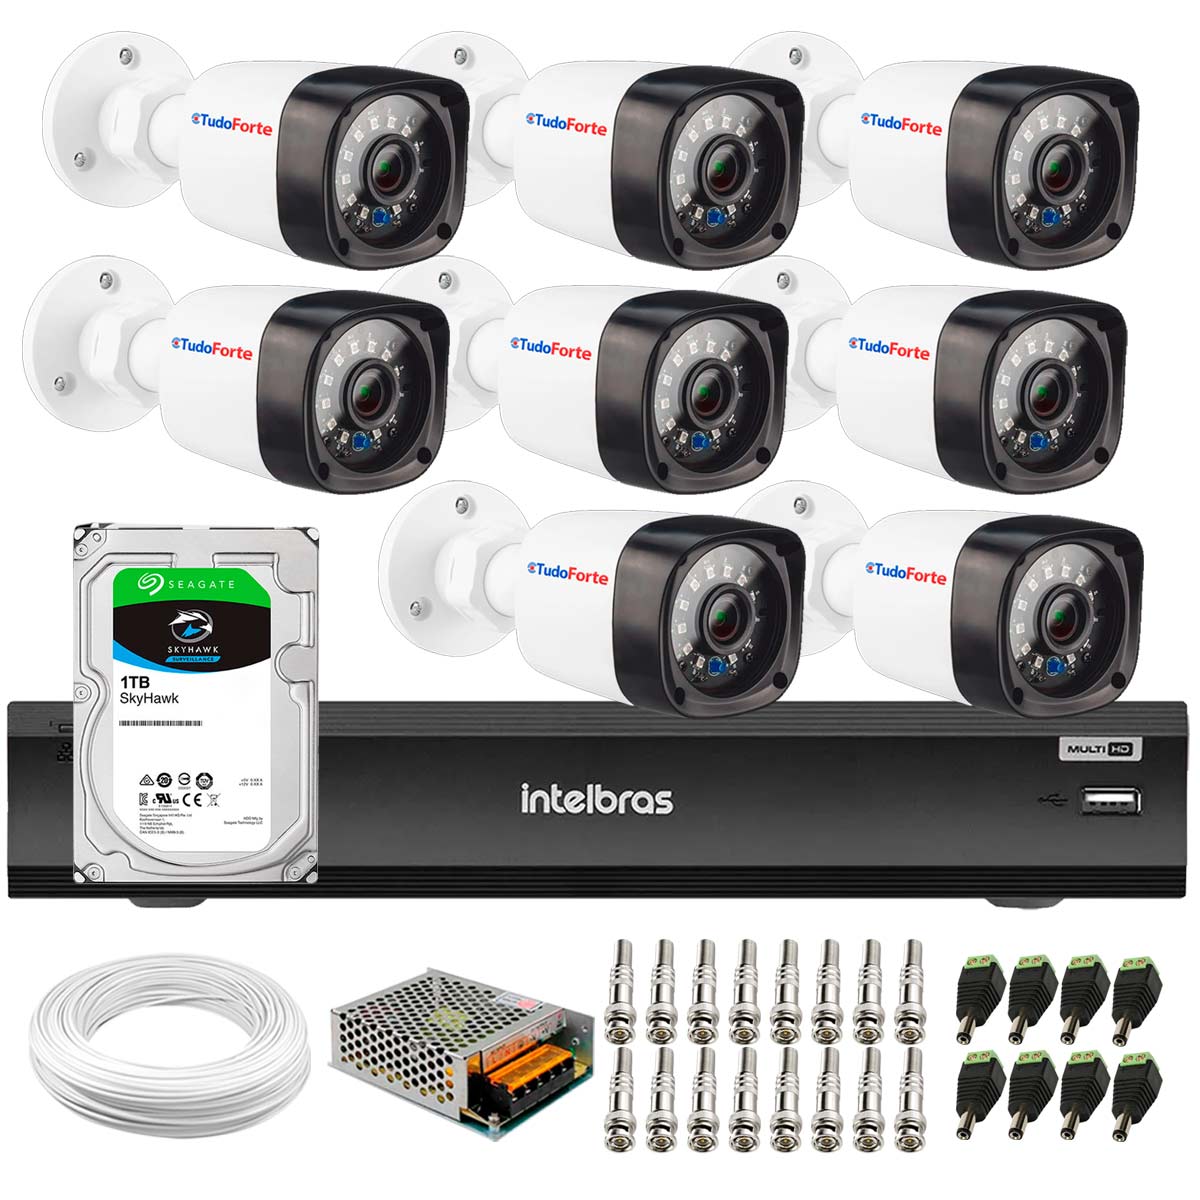 kit-2-cameras-vhd-3130-b-g6-dvr-intelbras-app-gratis-de-monitoramento-cameras-hd-720p-30m-infravermelho-de-visao-noturna-intelbras-fonte-cabos-e-acessorios